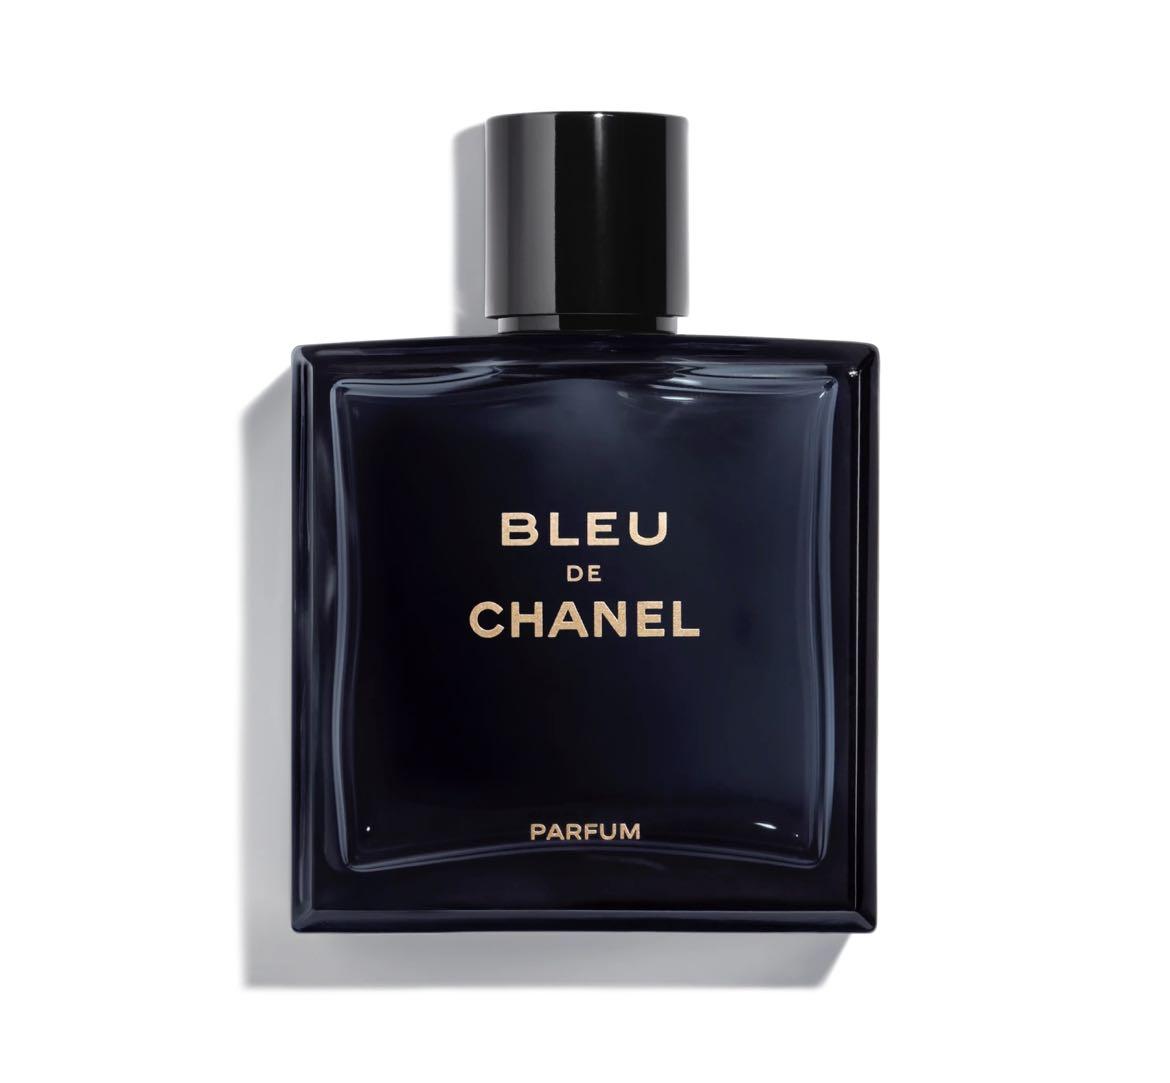 Bleu de Chanel Parfum 50ml, Beauty & Personal Care, Fragrance